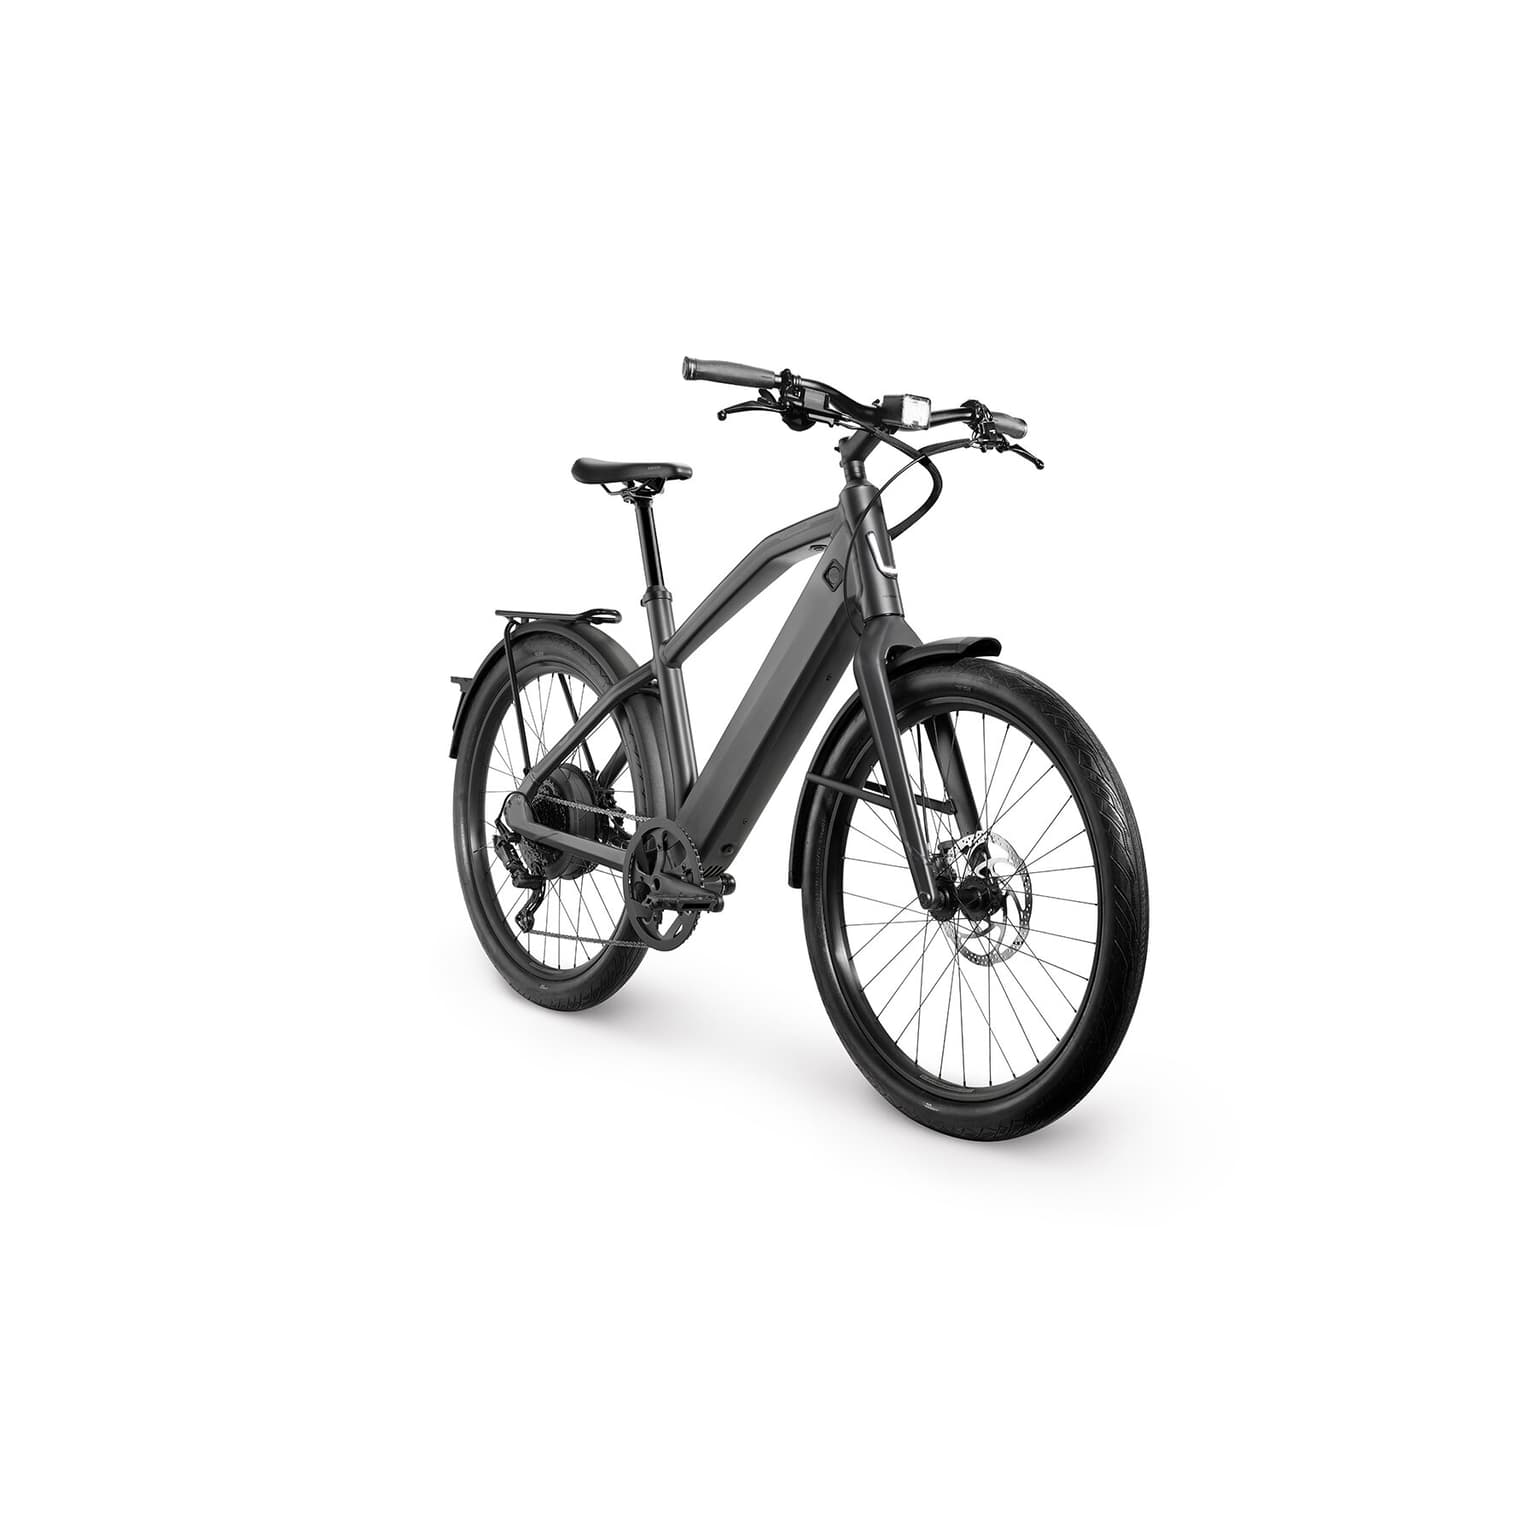 Stromer Stromer ST1 Sport Bicicletta elettrica 45km/h grigio-scuro 2